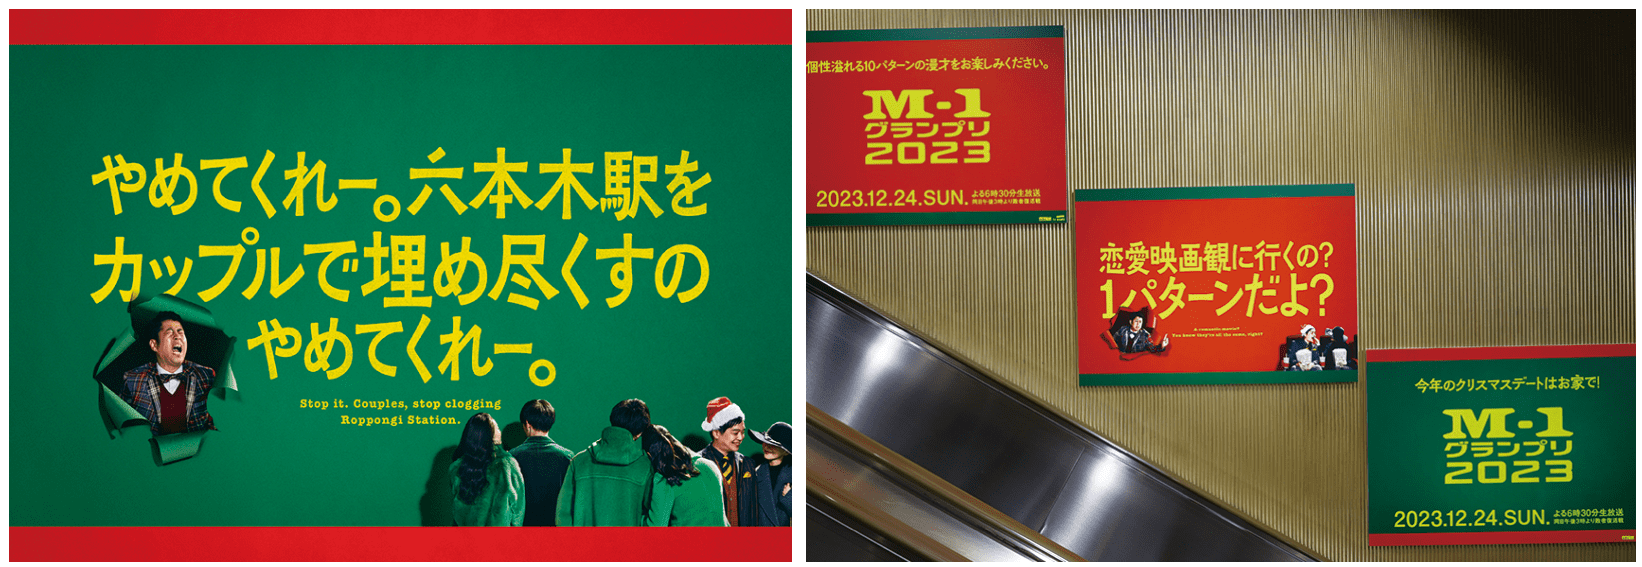 クリスマスには都営地下鉄大江戸線六本木駅に『M-1グランプリ2022』の王者ウエストランドが登場。六本木周辺を訪れた人々に向けて毒舌でメッセージ。